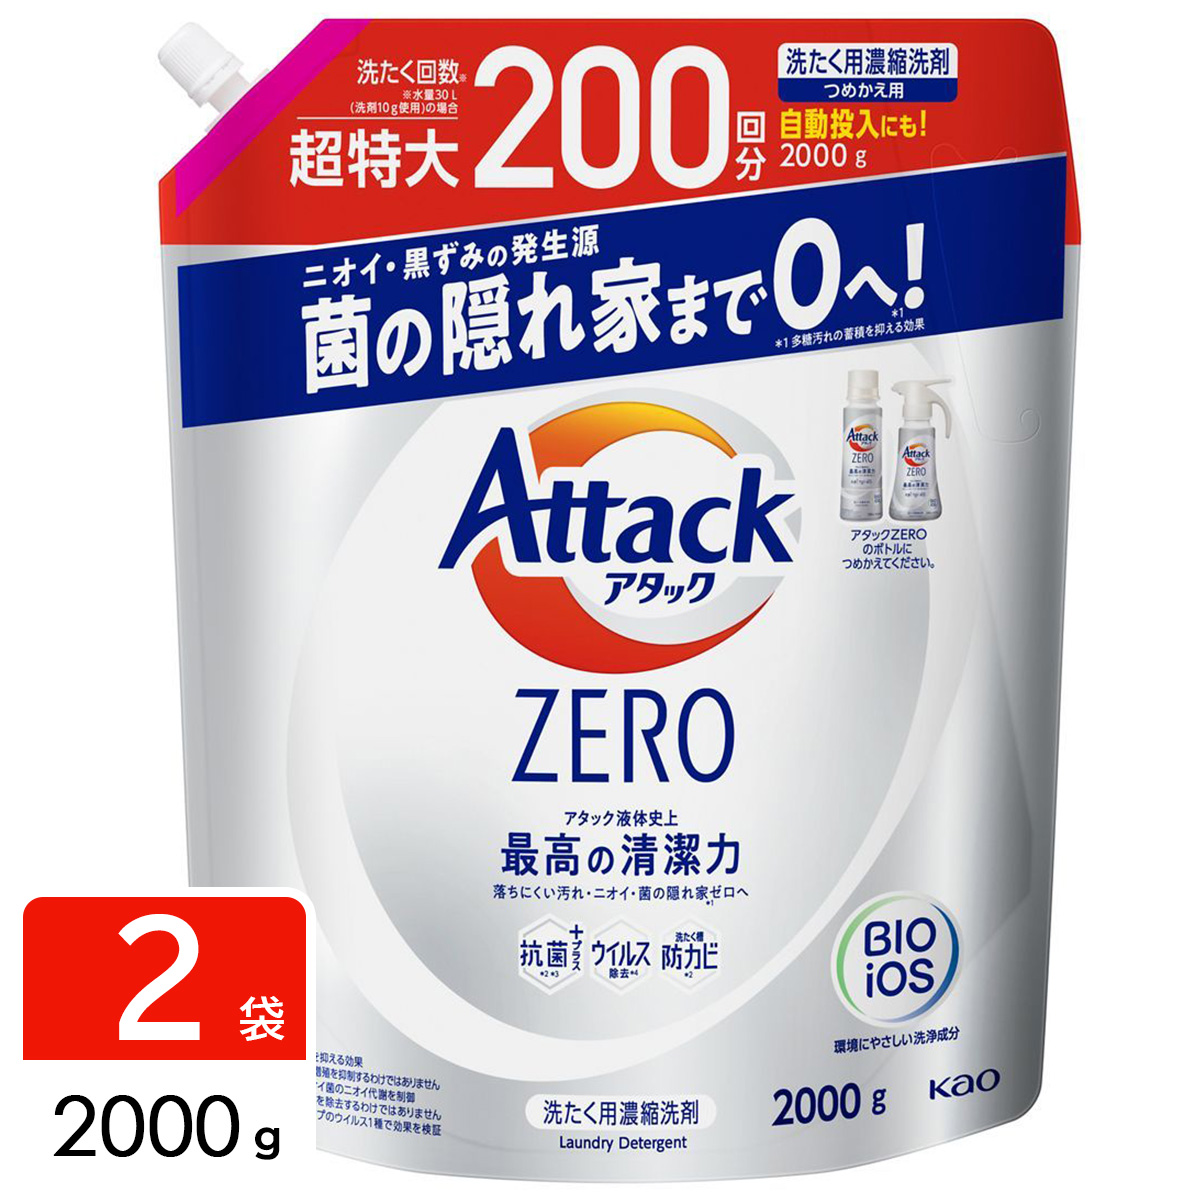 アタックZERO Attack ZERO 洗濯洗剤 詰め替え 超特大 2000g ×2袋